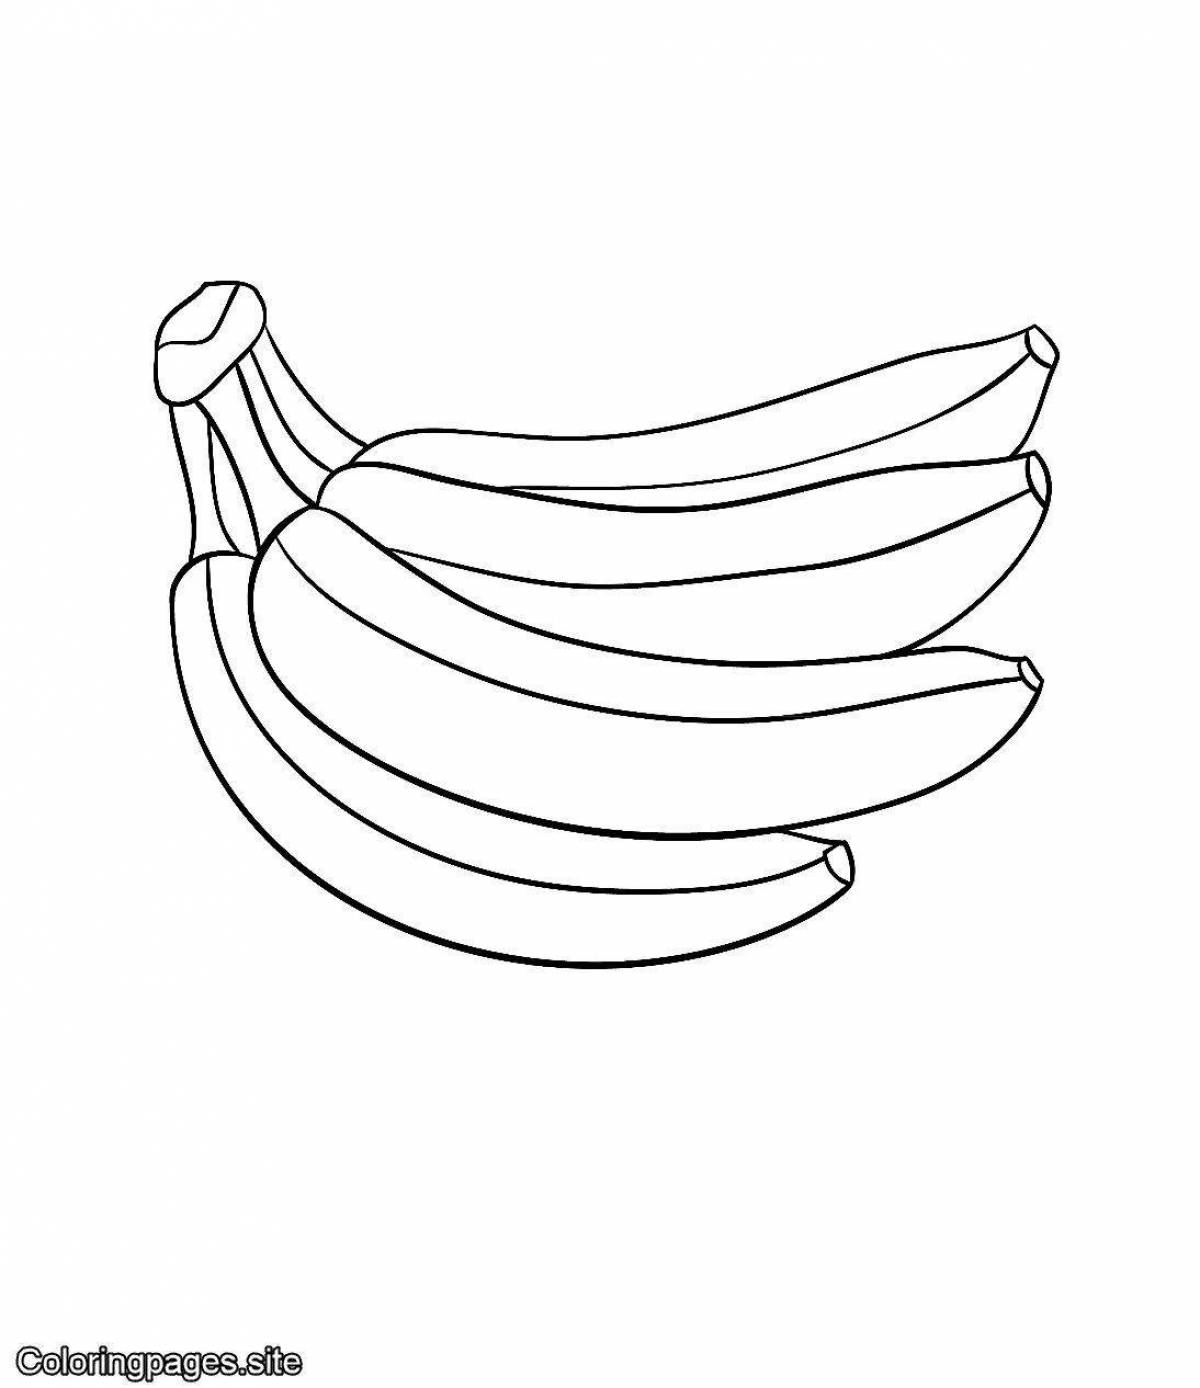 Раскраска бананы с цветными брызгами для детей 2-3 лет